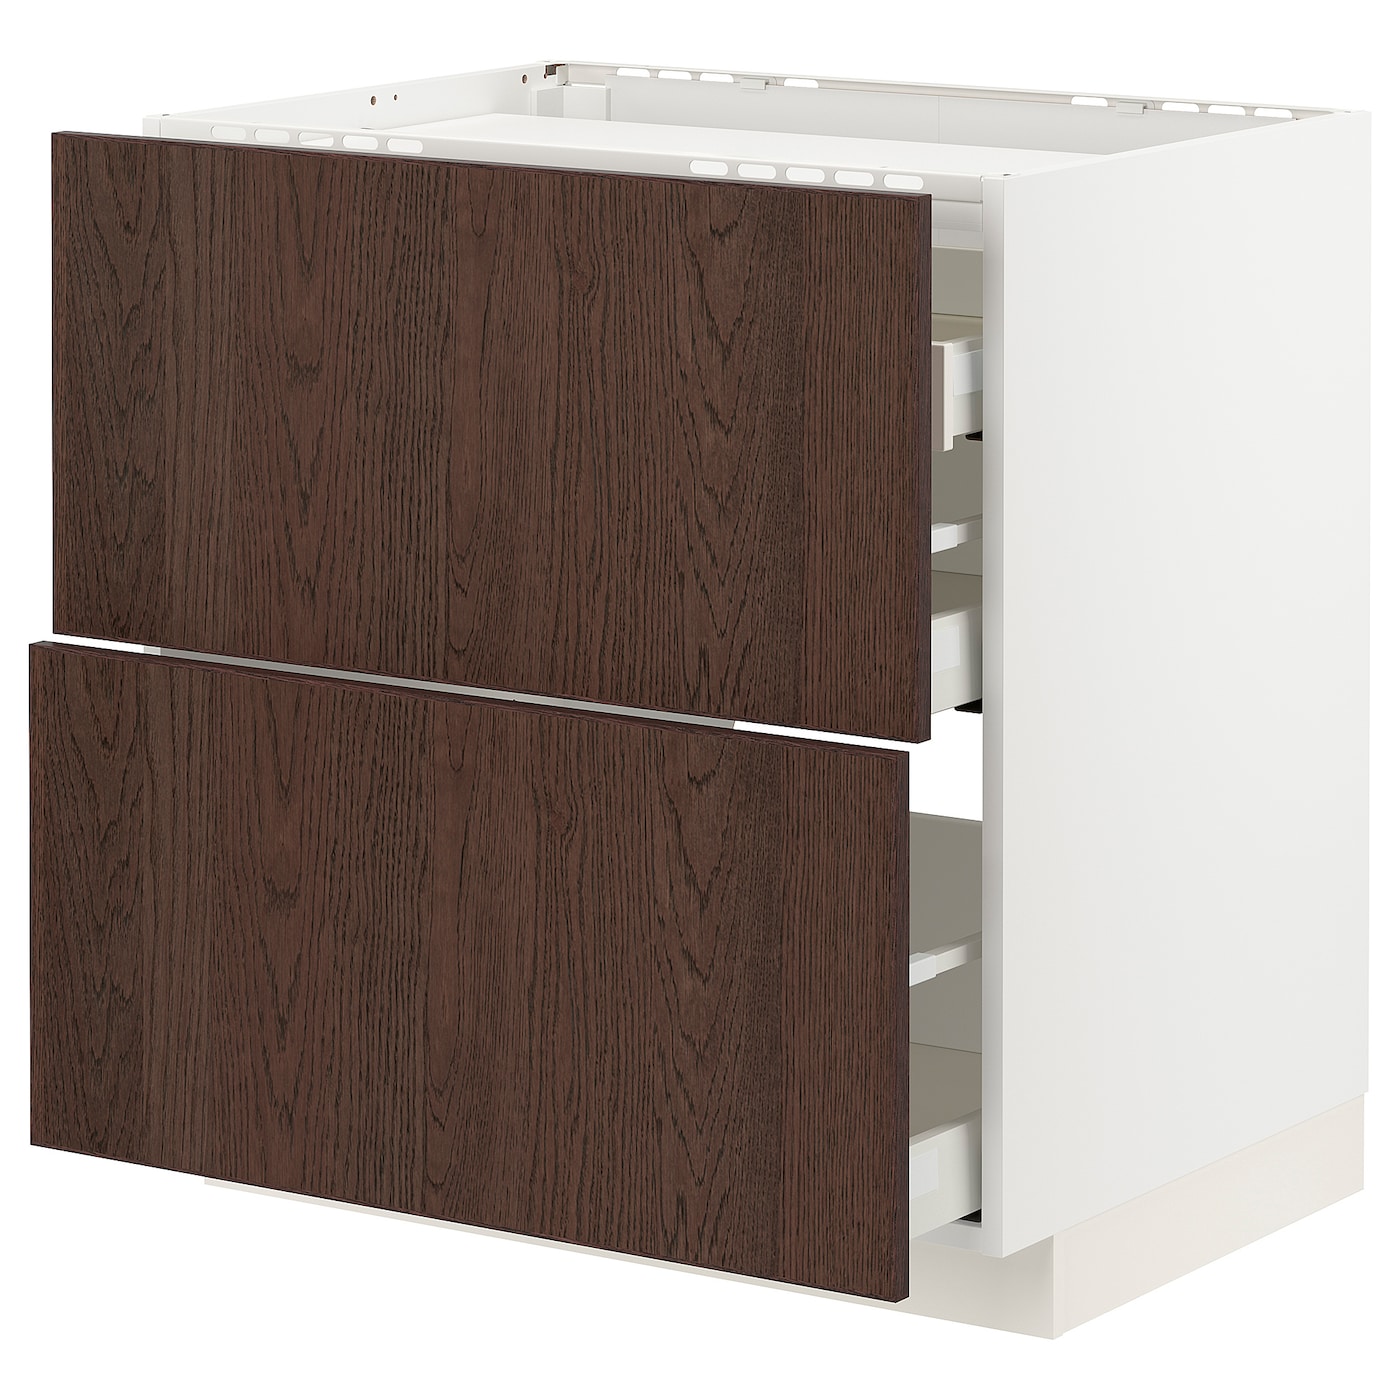 Напольный шкаф - IKEA METOD MAXIMERA, 88x62x80см, белый/темно-коричневый, МЕТОД МАКСИМЕРА ИКЕА